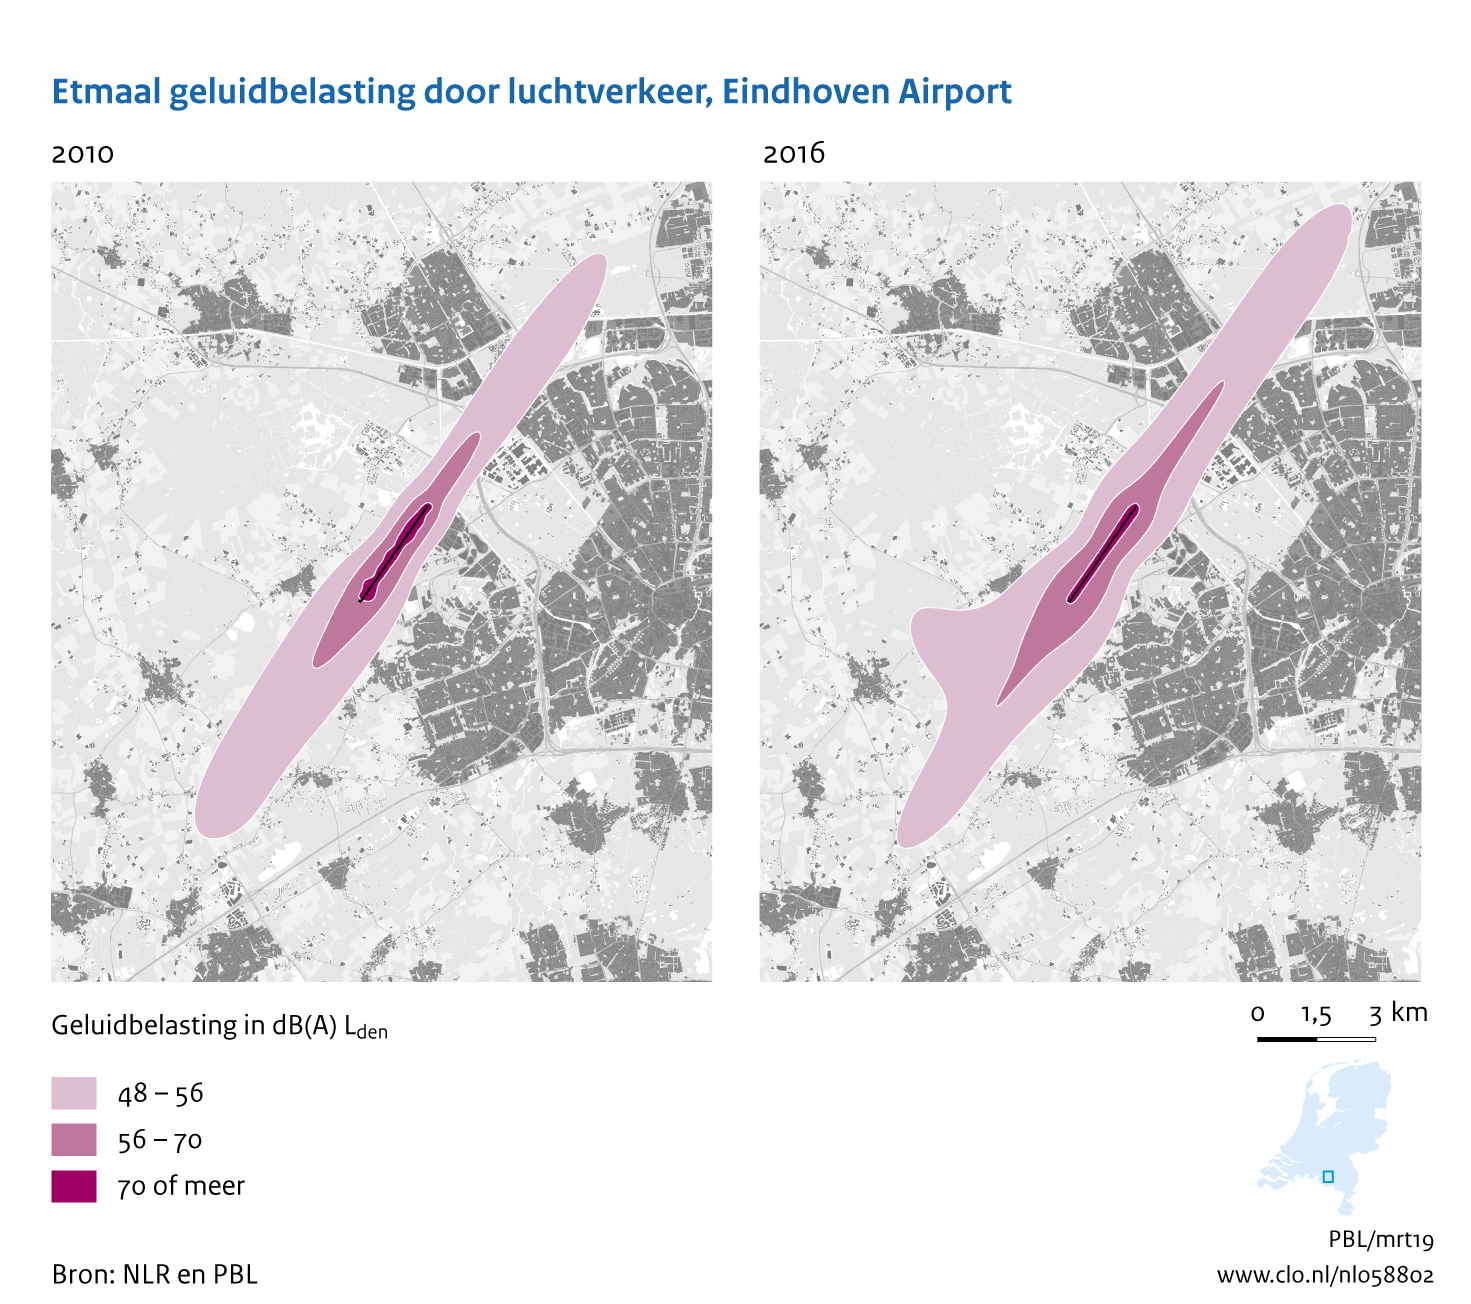 Figuur Etmaal geluidbelasting door luchtvaart, Eindhoven Airport, 2010-2016. In de rest van de tekst wordt deze figuur uitgebreider uitgelegd.